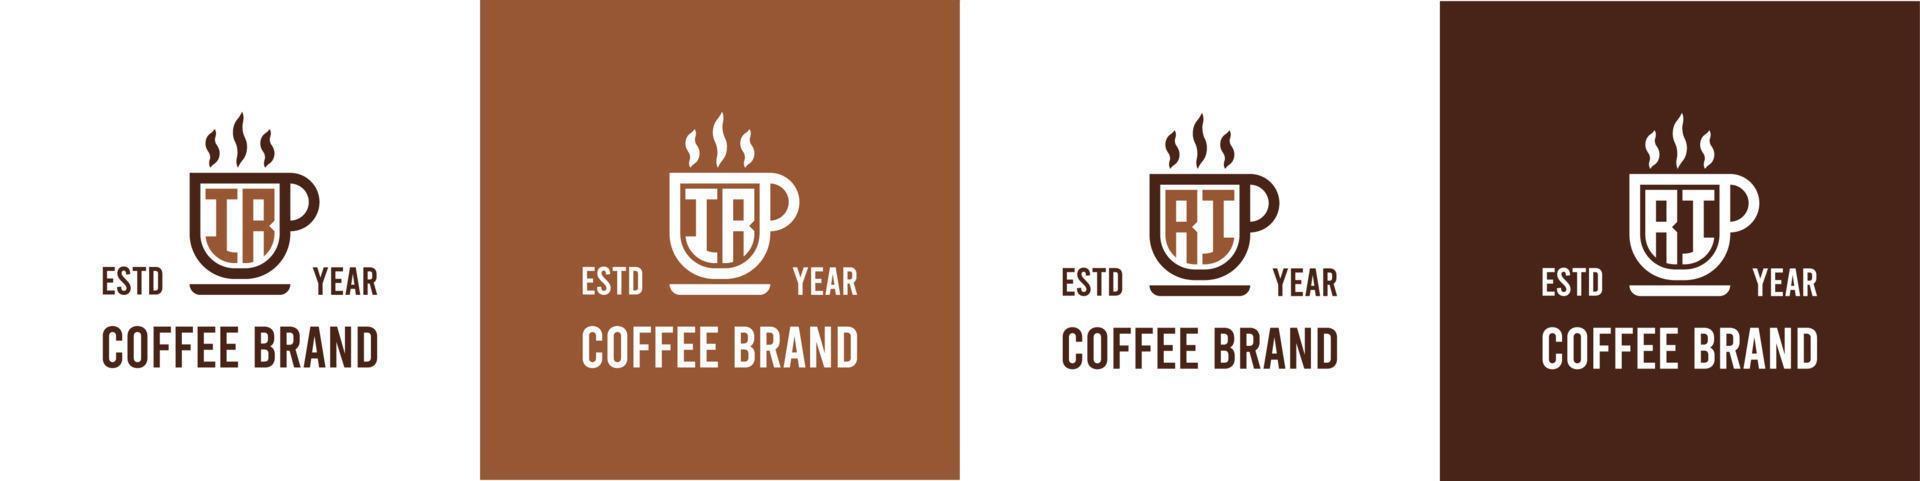 brief ir en ri koffie logo, geschikt voor ieder bedrijf verwant naar koffie, thee, of andere met ir of ri initialen. vector